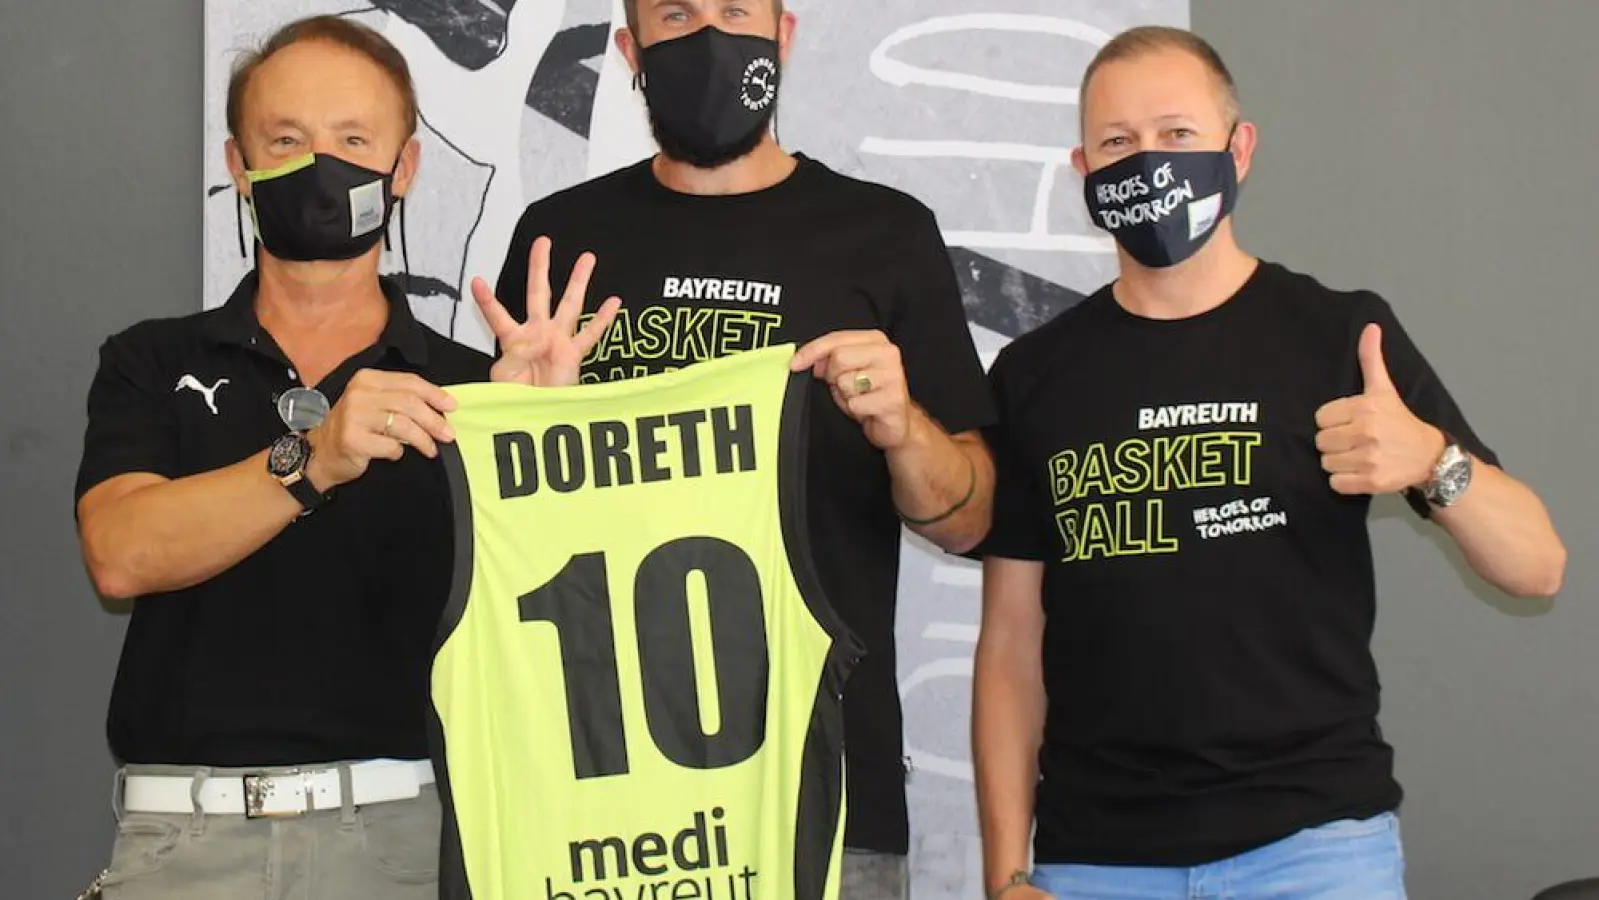 Bastian Doreth bleibt langfristig bei medi bayreuth. (Foto: medi bayreuth)